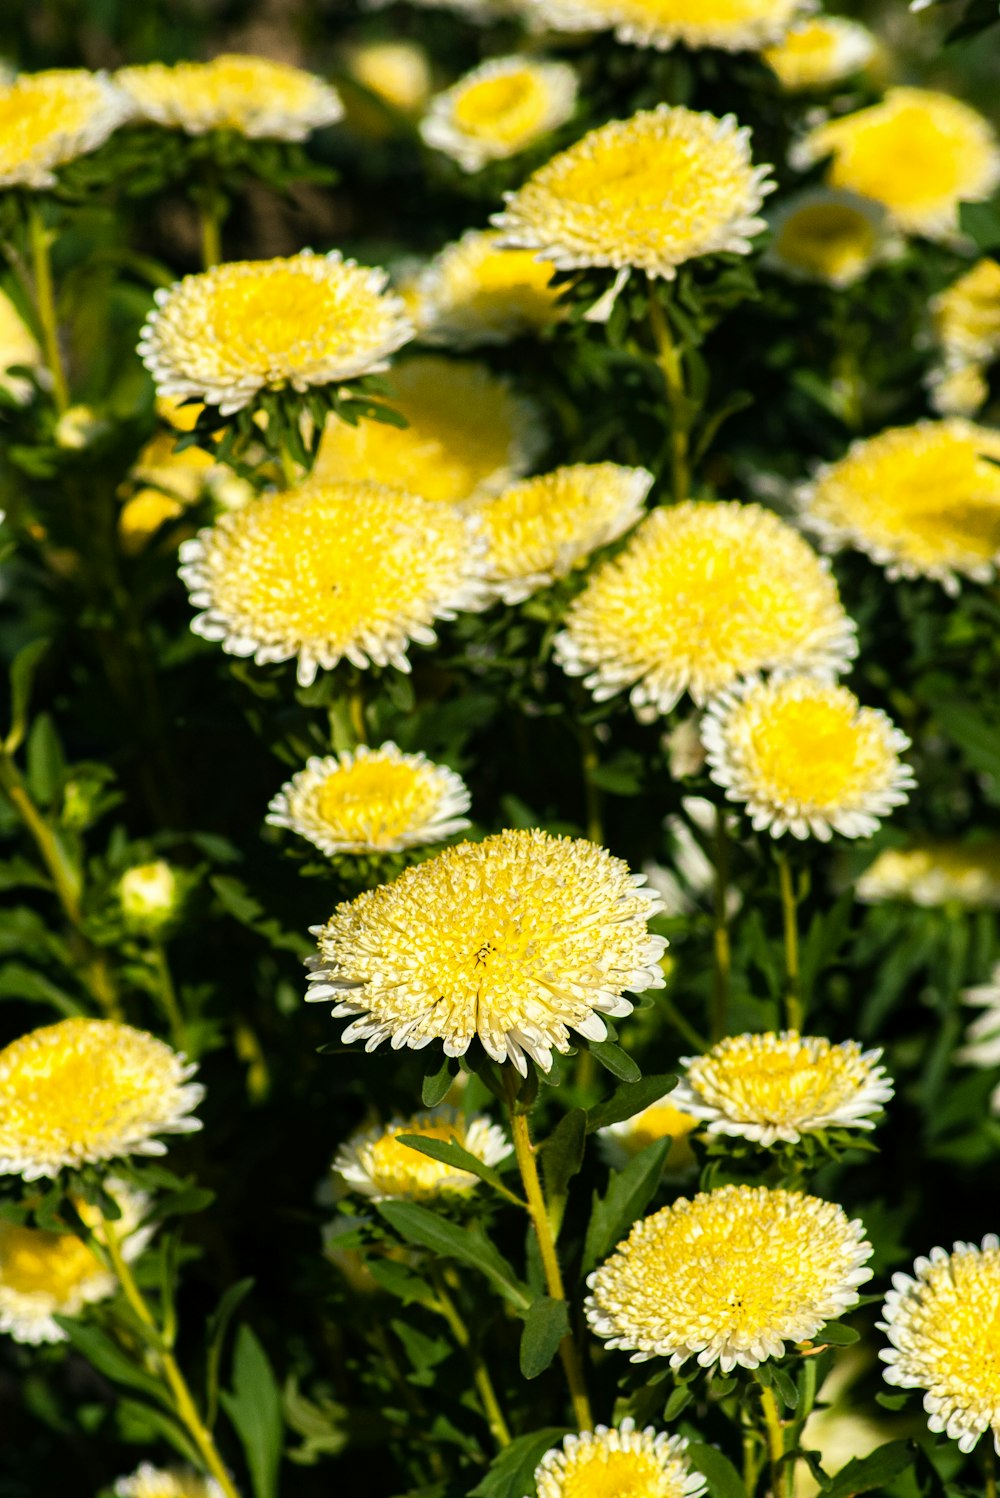 yellow and white flowers in tilt shift lens